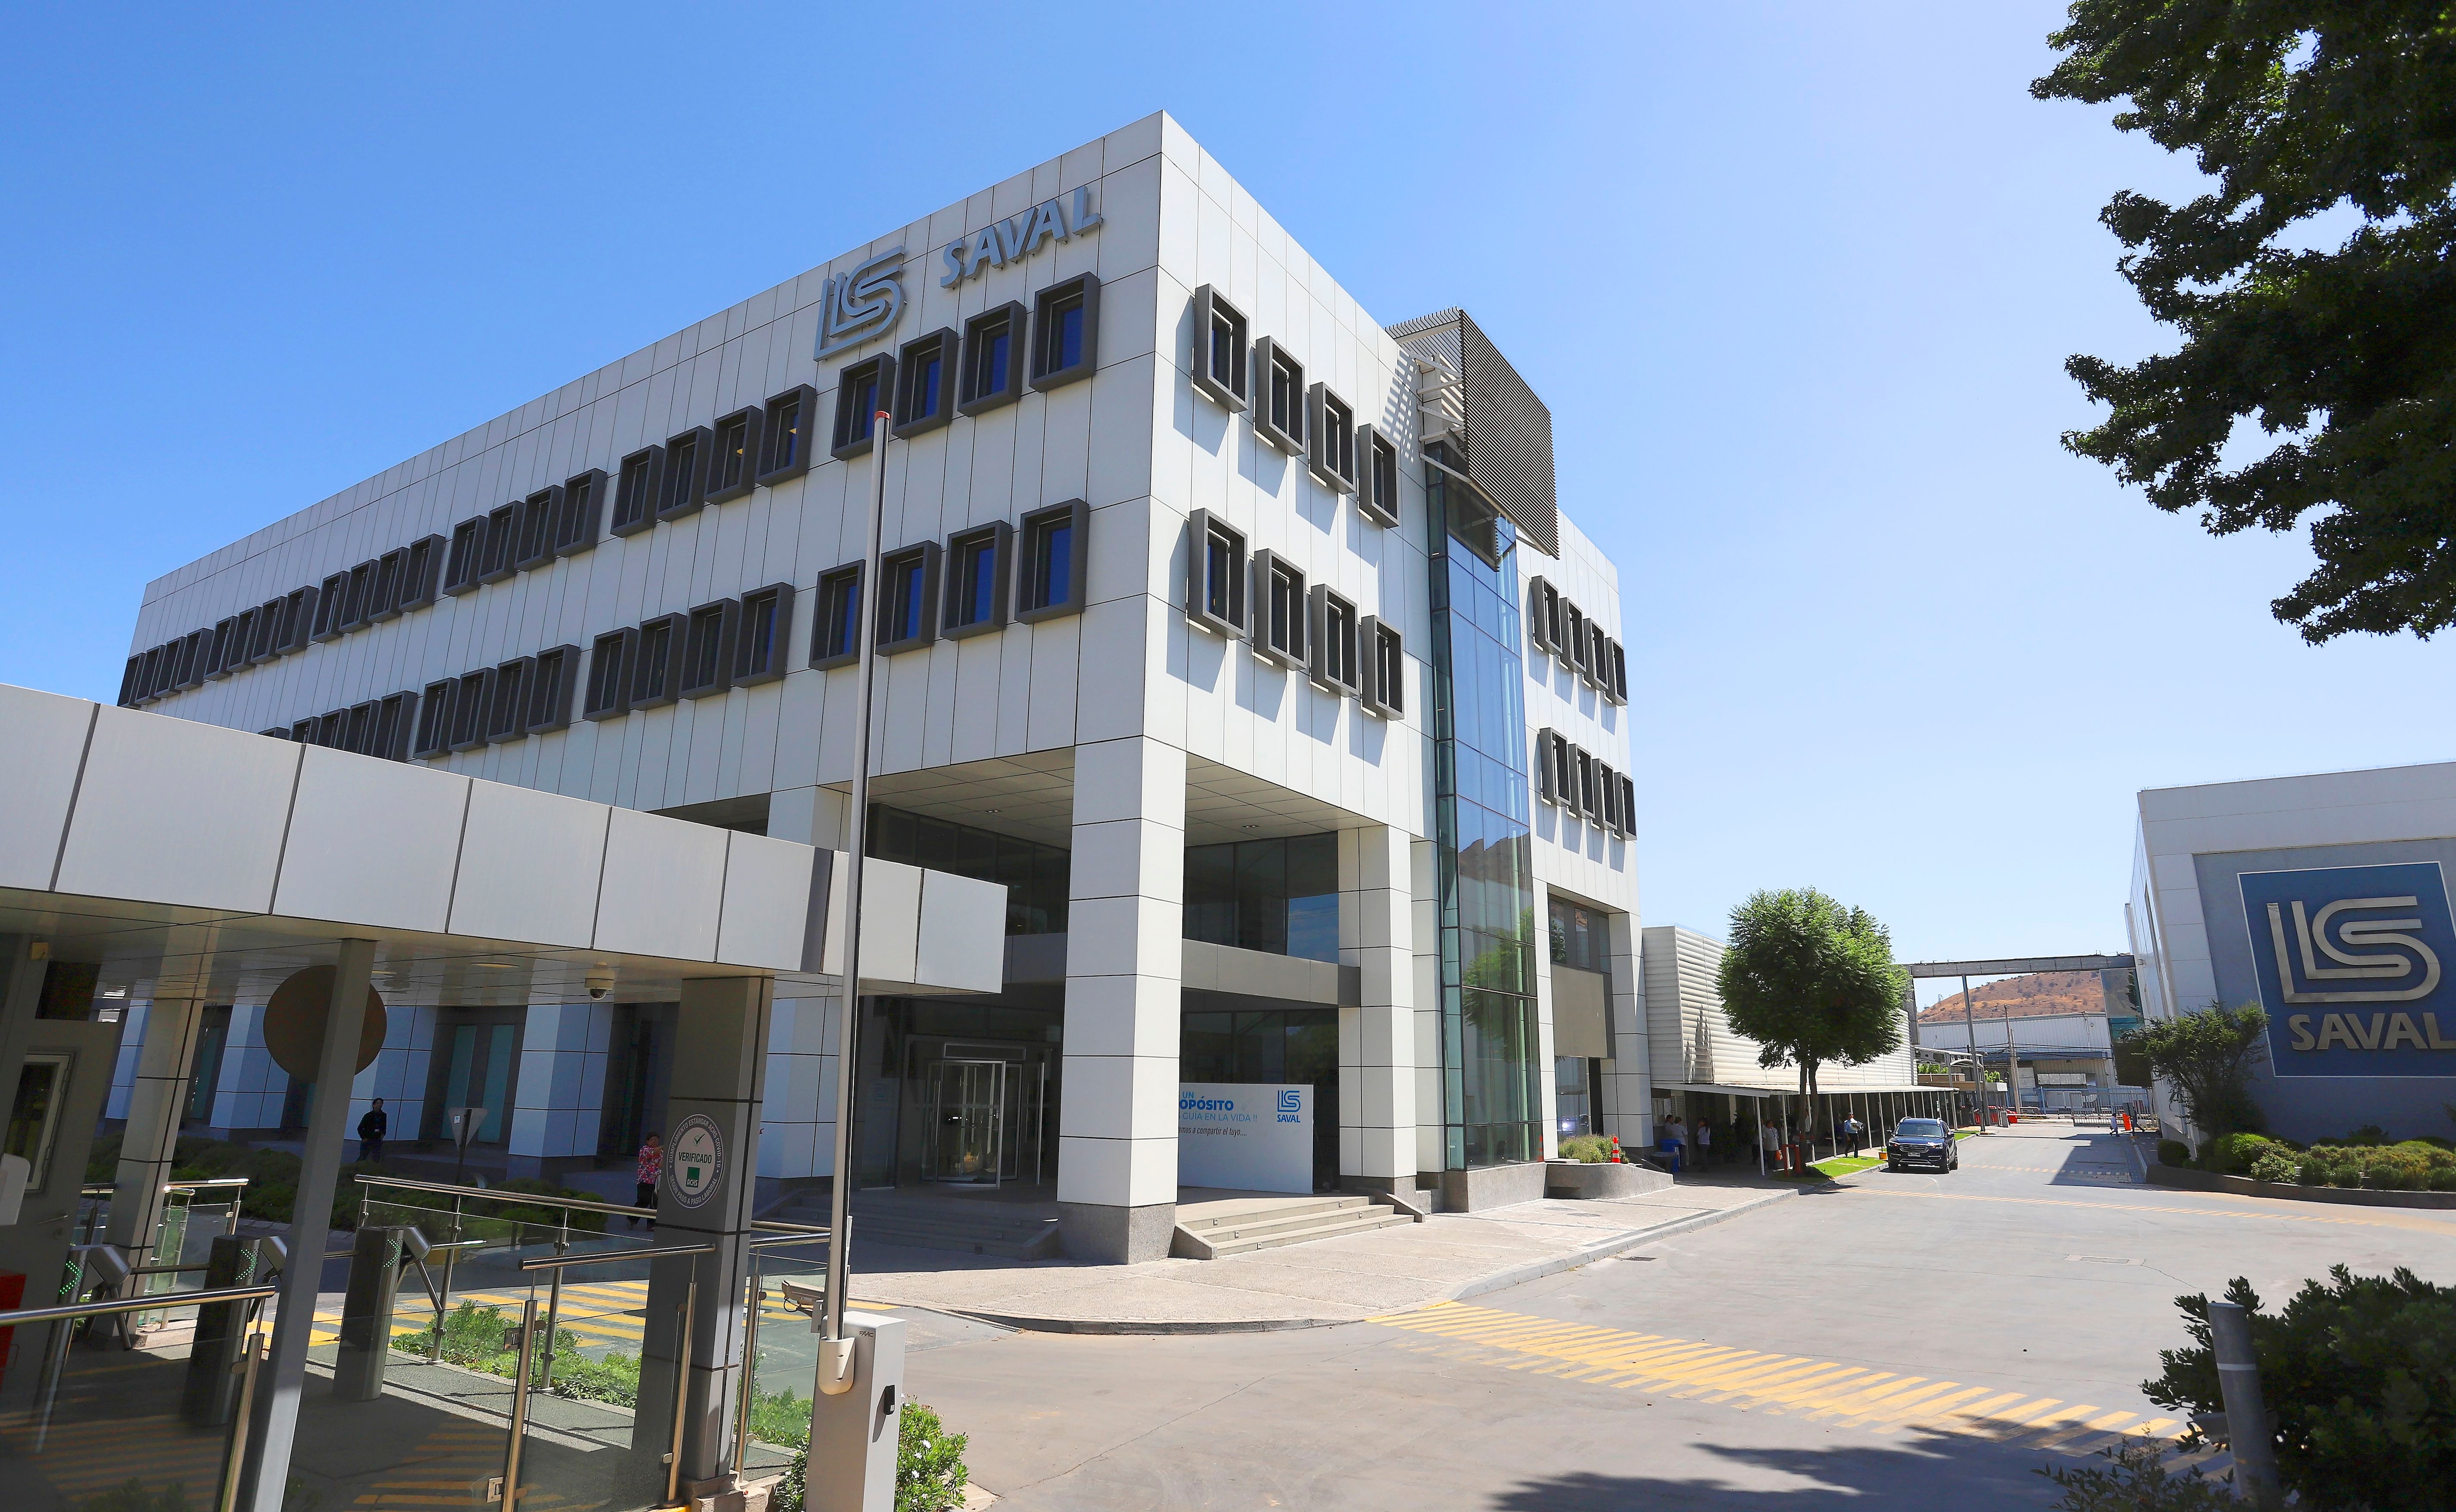 Laboratorios Saval, de origen chileno, confirmó su ingreso al mercado farmacéutico costarricense mediante la compra de la planta de producción de Laboratorios Stein, ubicada en Cartago.